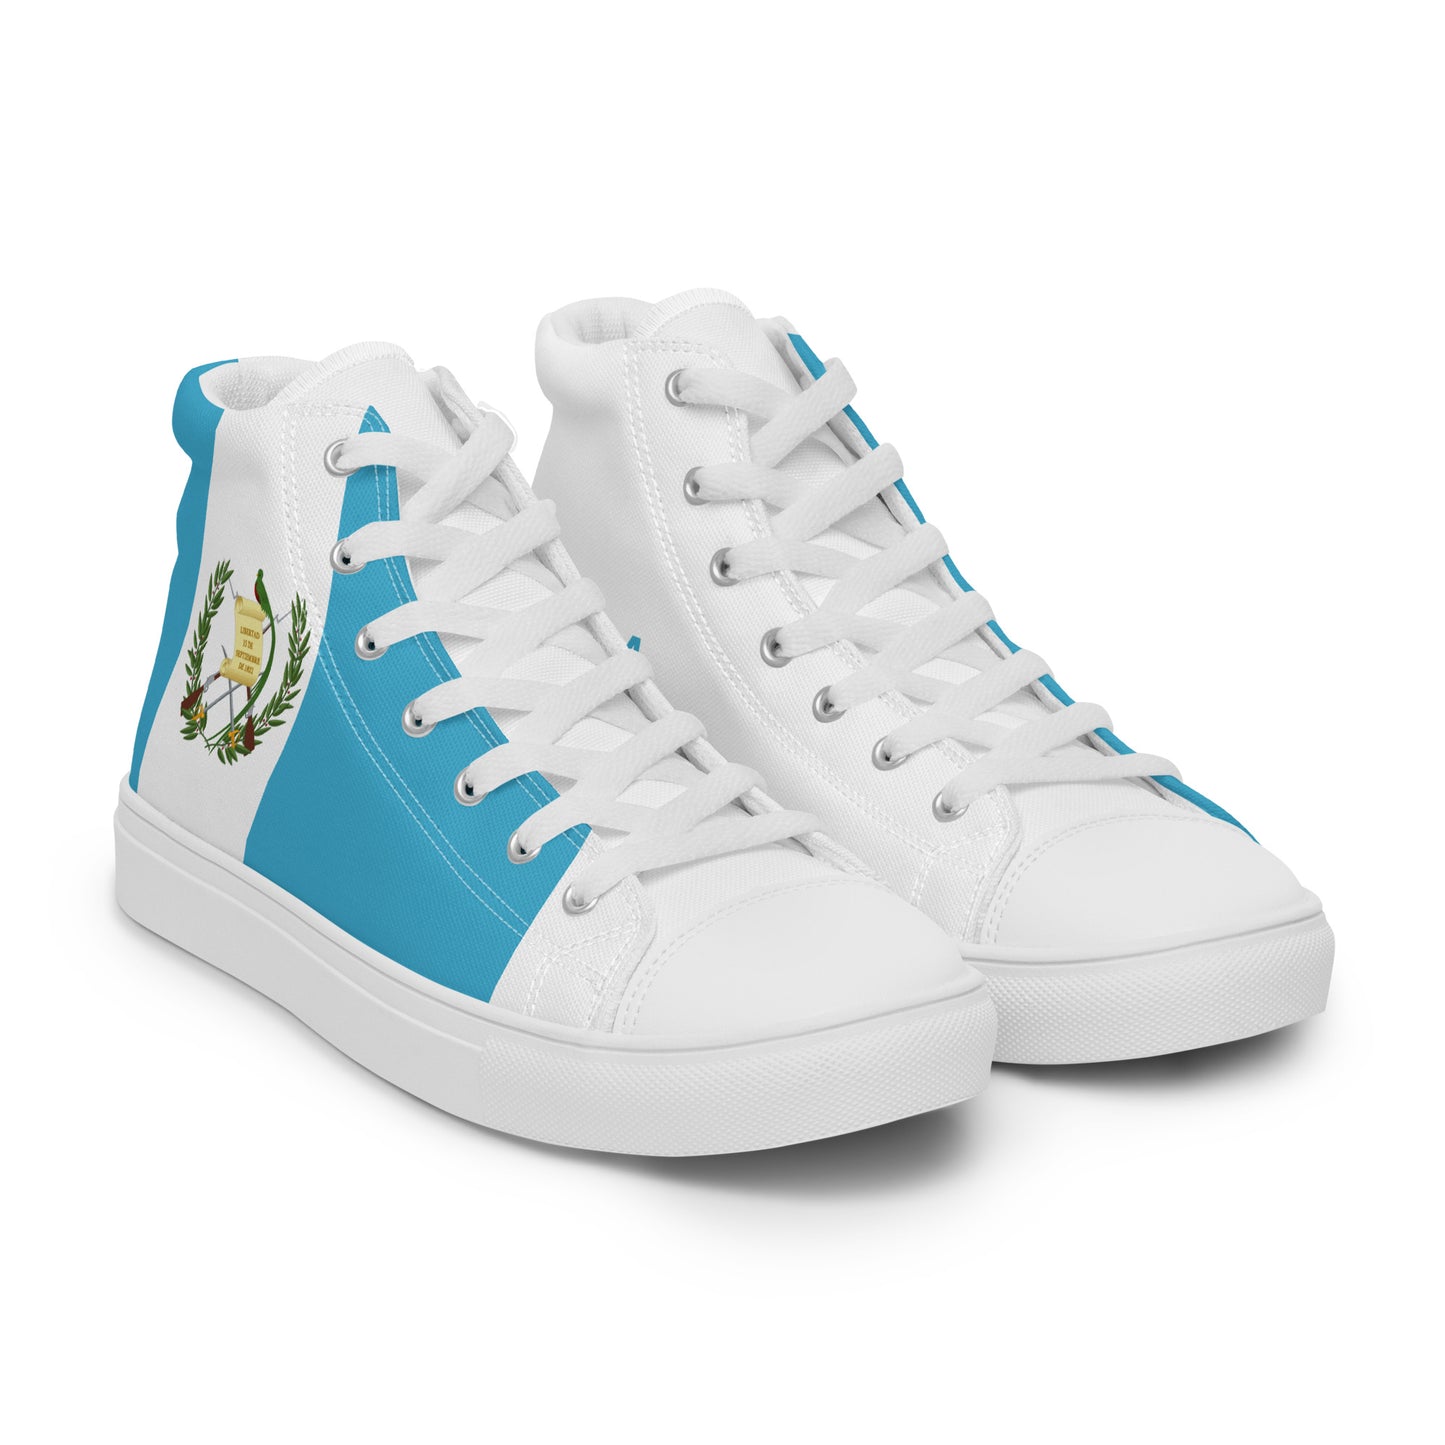 Guatemala - Women - Bandera - High top shoes